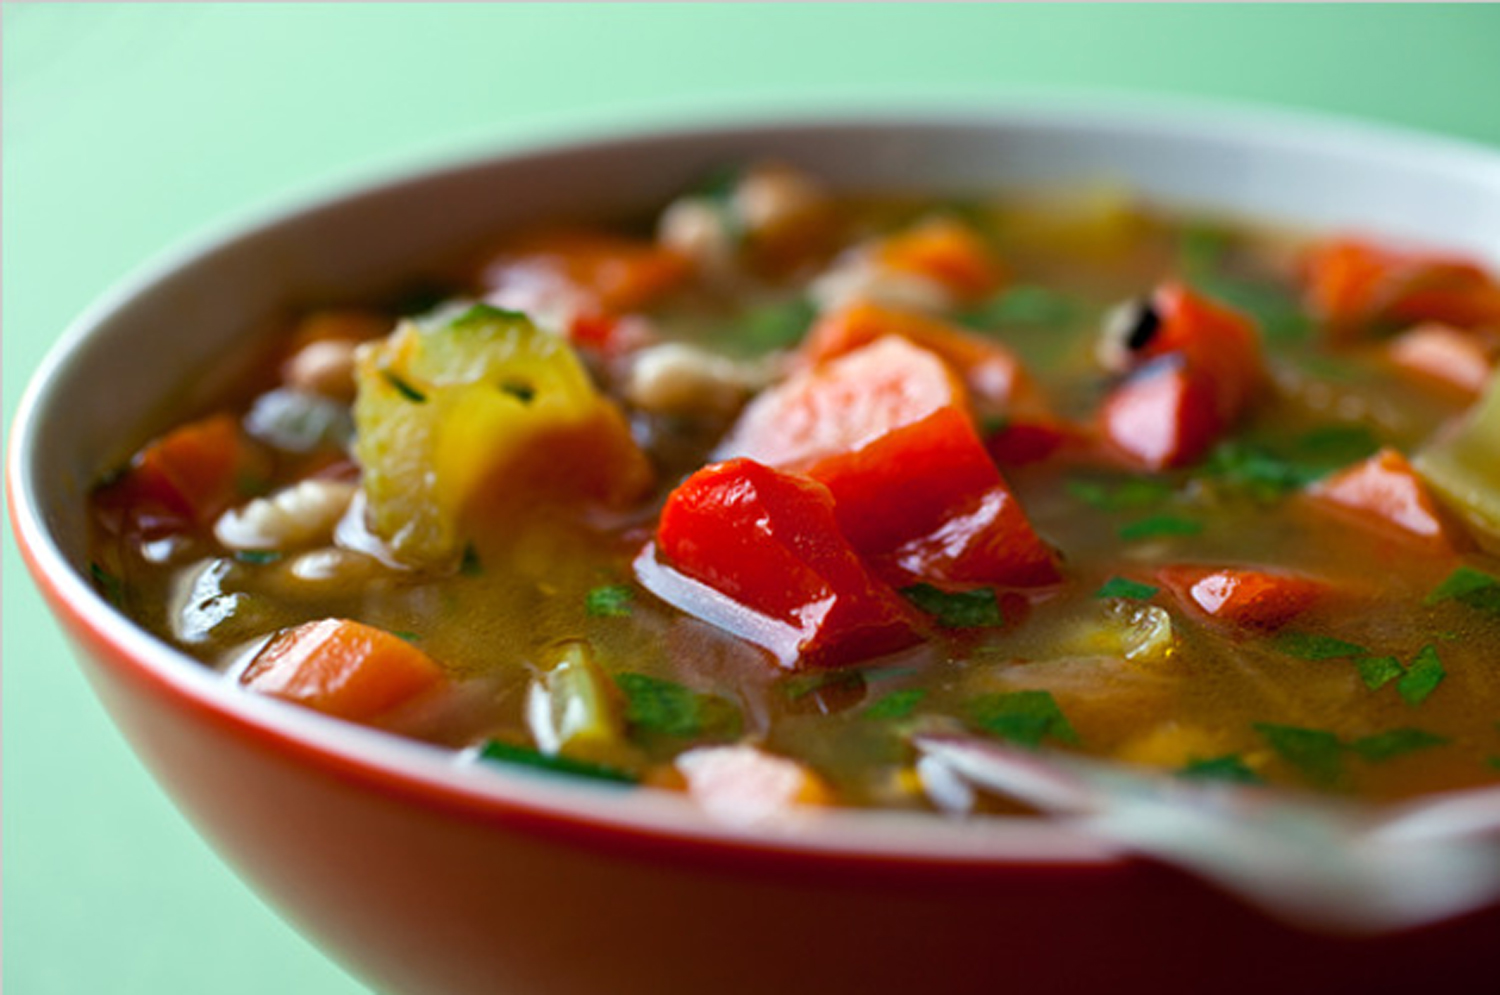 Εάν θέλουμε να ζεστάνουμε τη σούπα μας, καλό είναι να βγάλουμε το σέλινο και τα καρότα και να τα προσθέσουμε μετά το ζέσταμα στο πιάτο μας